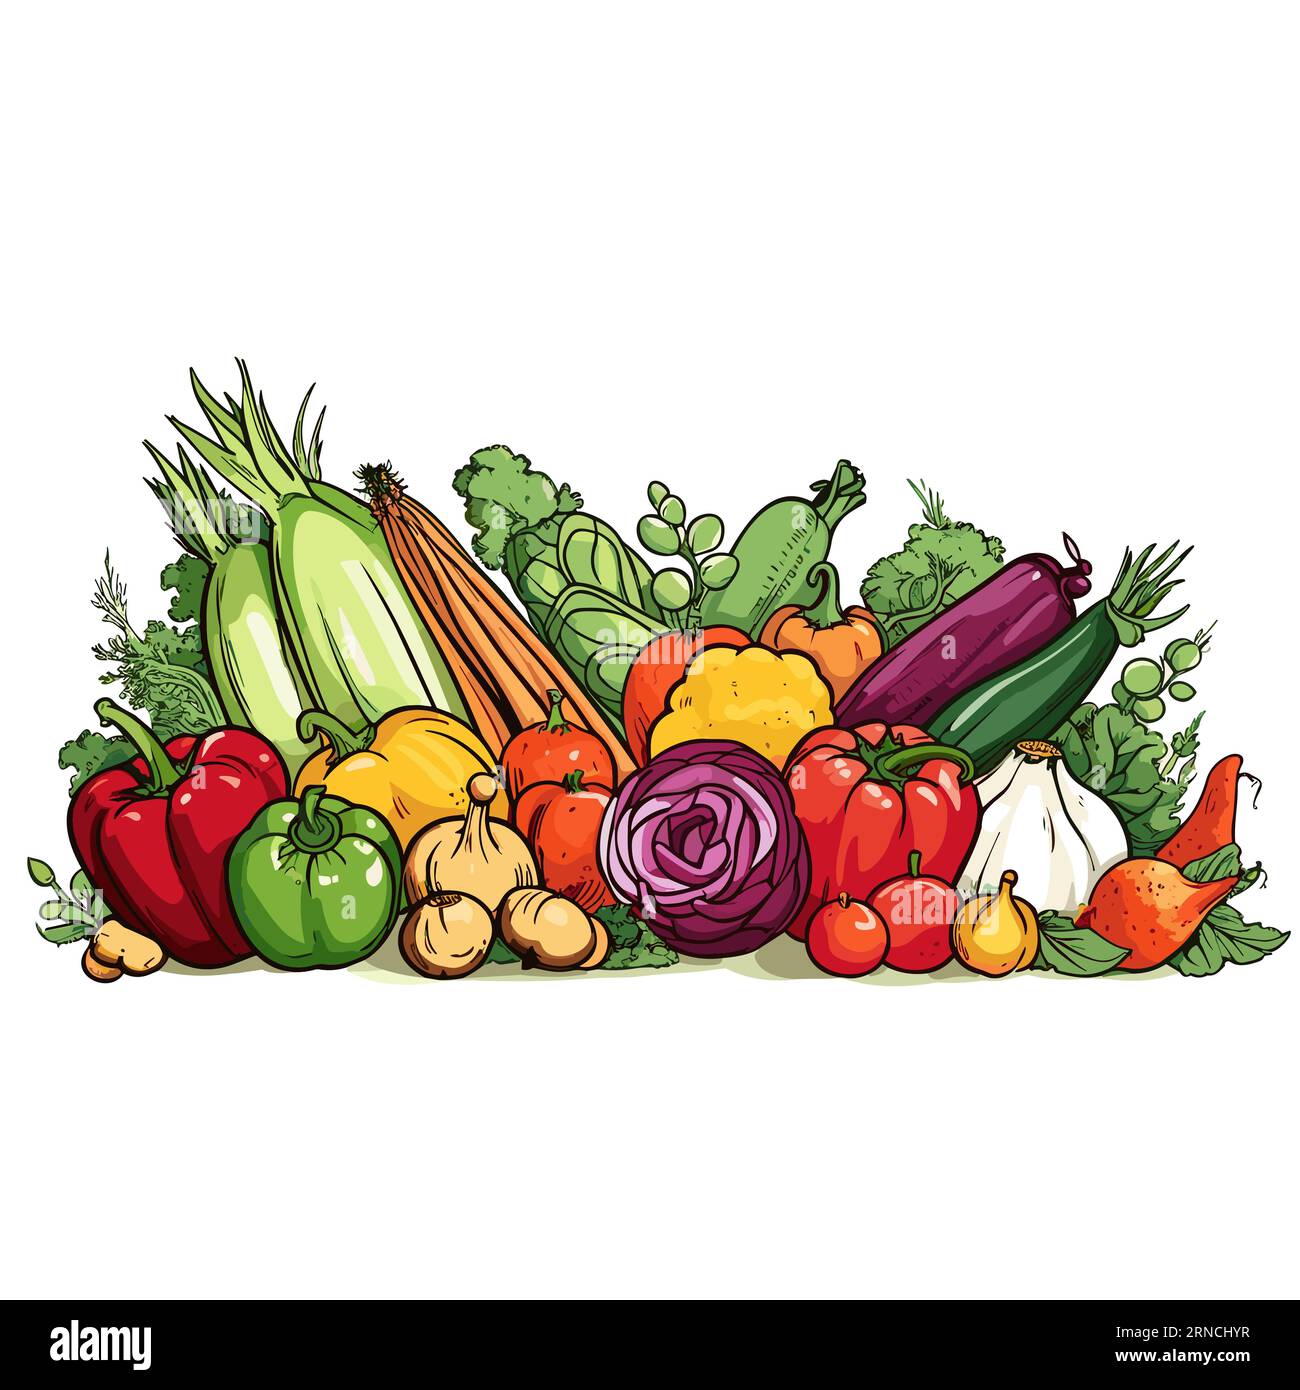 Un bouquet de légumes différents sont placés sur Un fond blanc, dans le style de cartoonish vibrant, des bordures élaborées, des couleurs vives, des lignes fortes Illustration de Vecteur